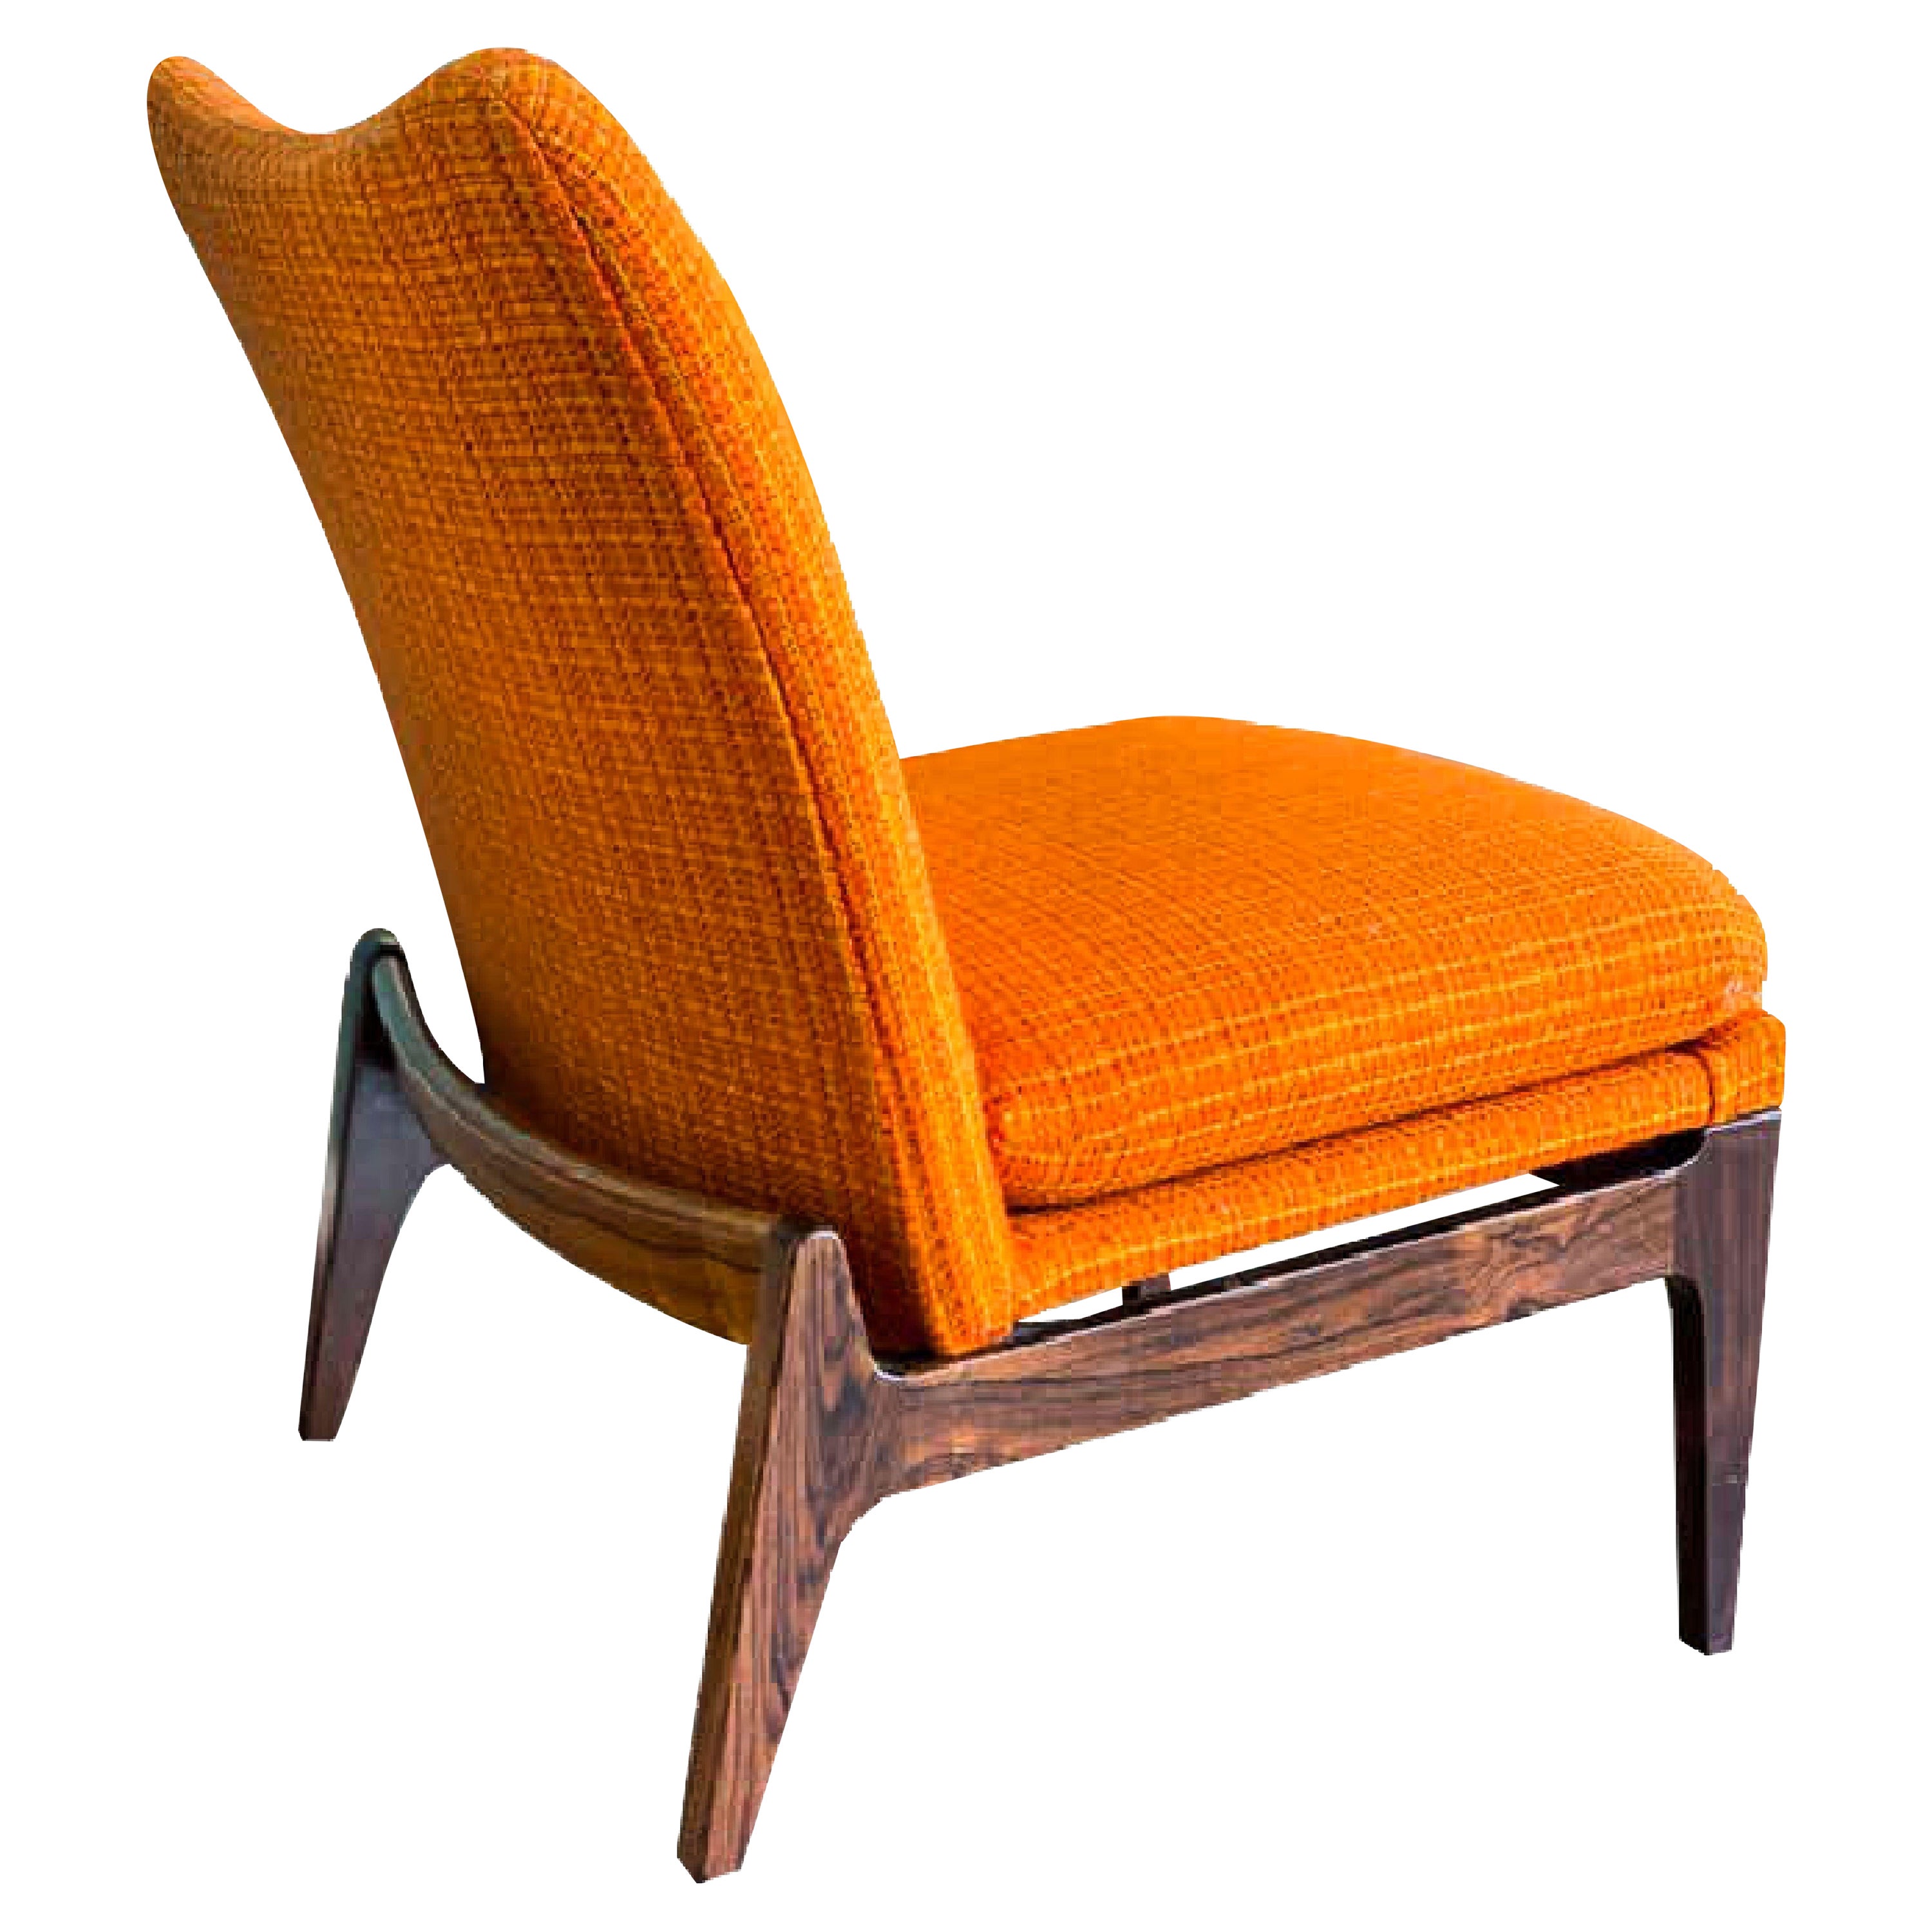 Chaise longue Finn Juhl FD 112, bois de rose, Cado, France & Søn, années 1960, Danemark.   Magnifique base en bois de rose. Étiquette du fabricant en dessous : 